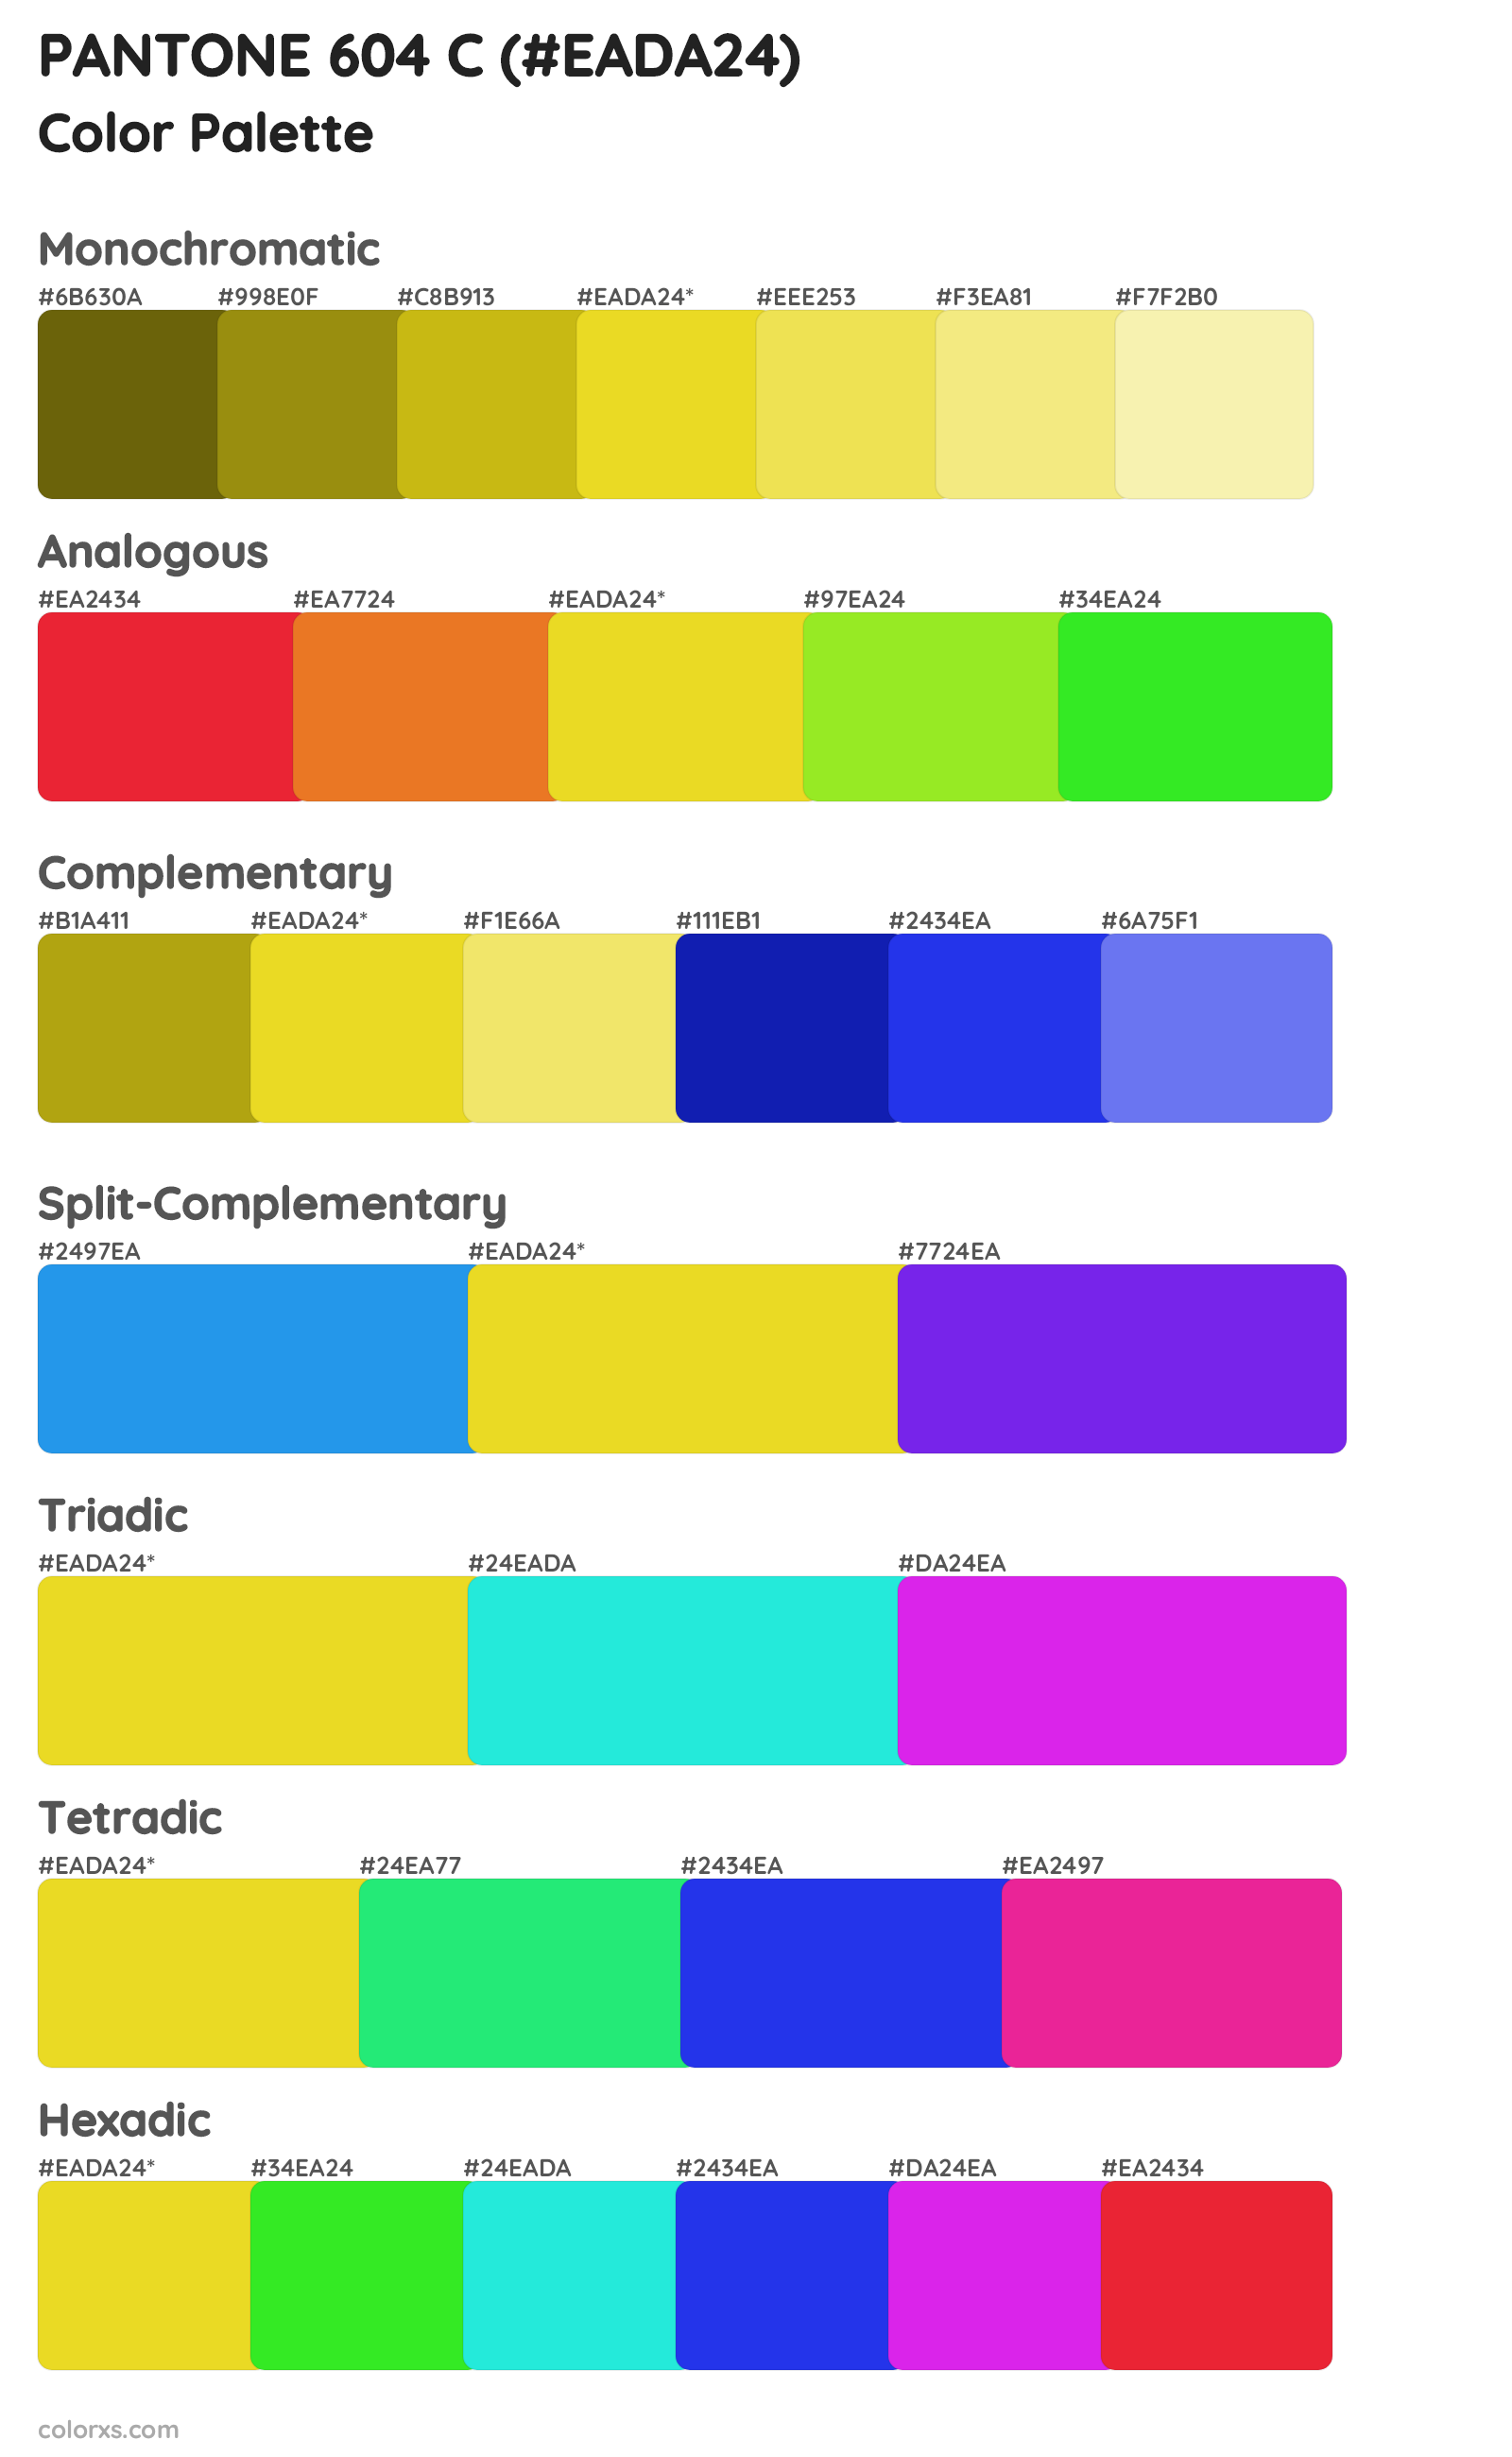 PANTONE 604 C Color Scheme Palettes